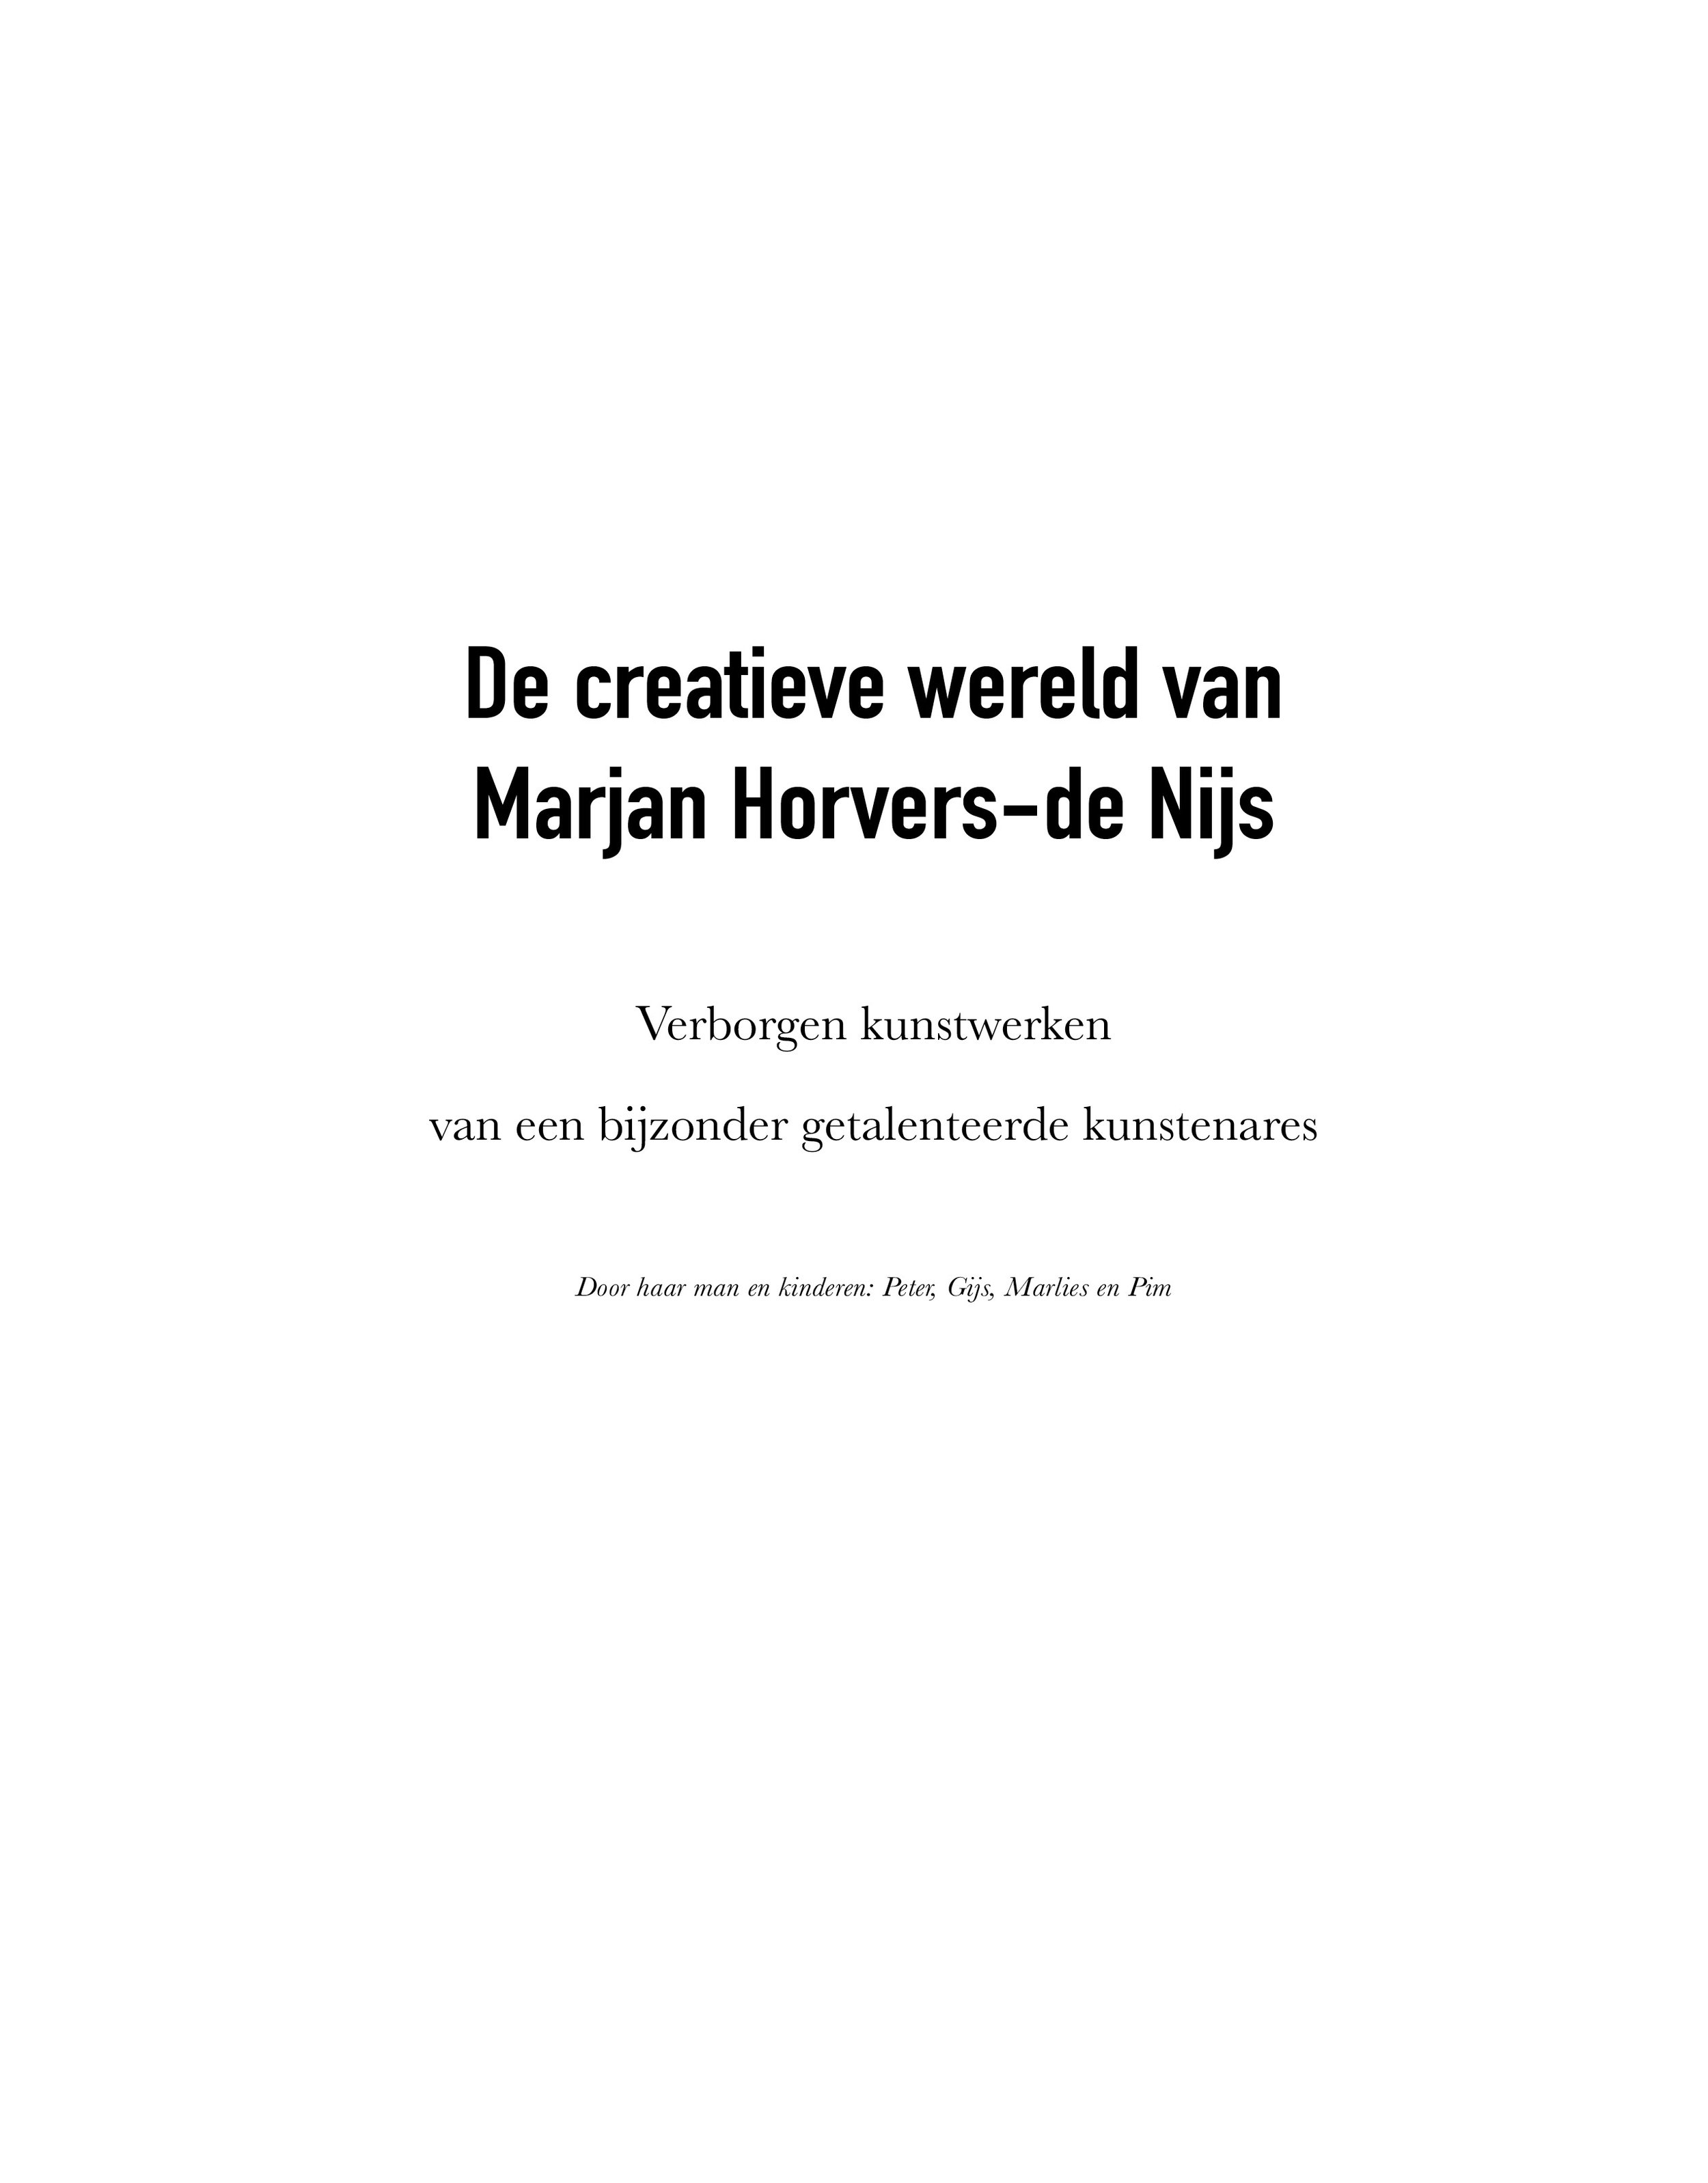 Boek - Marjan Horvers de Nijs - Versie 30-10-21.jpg